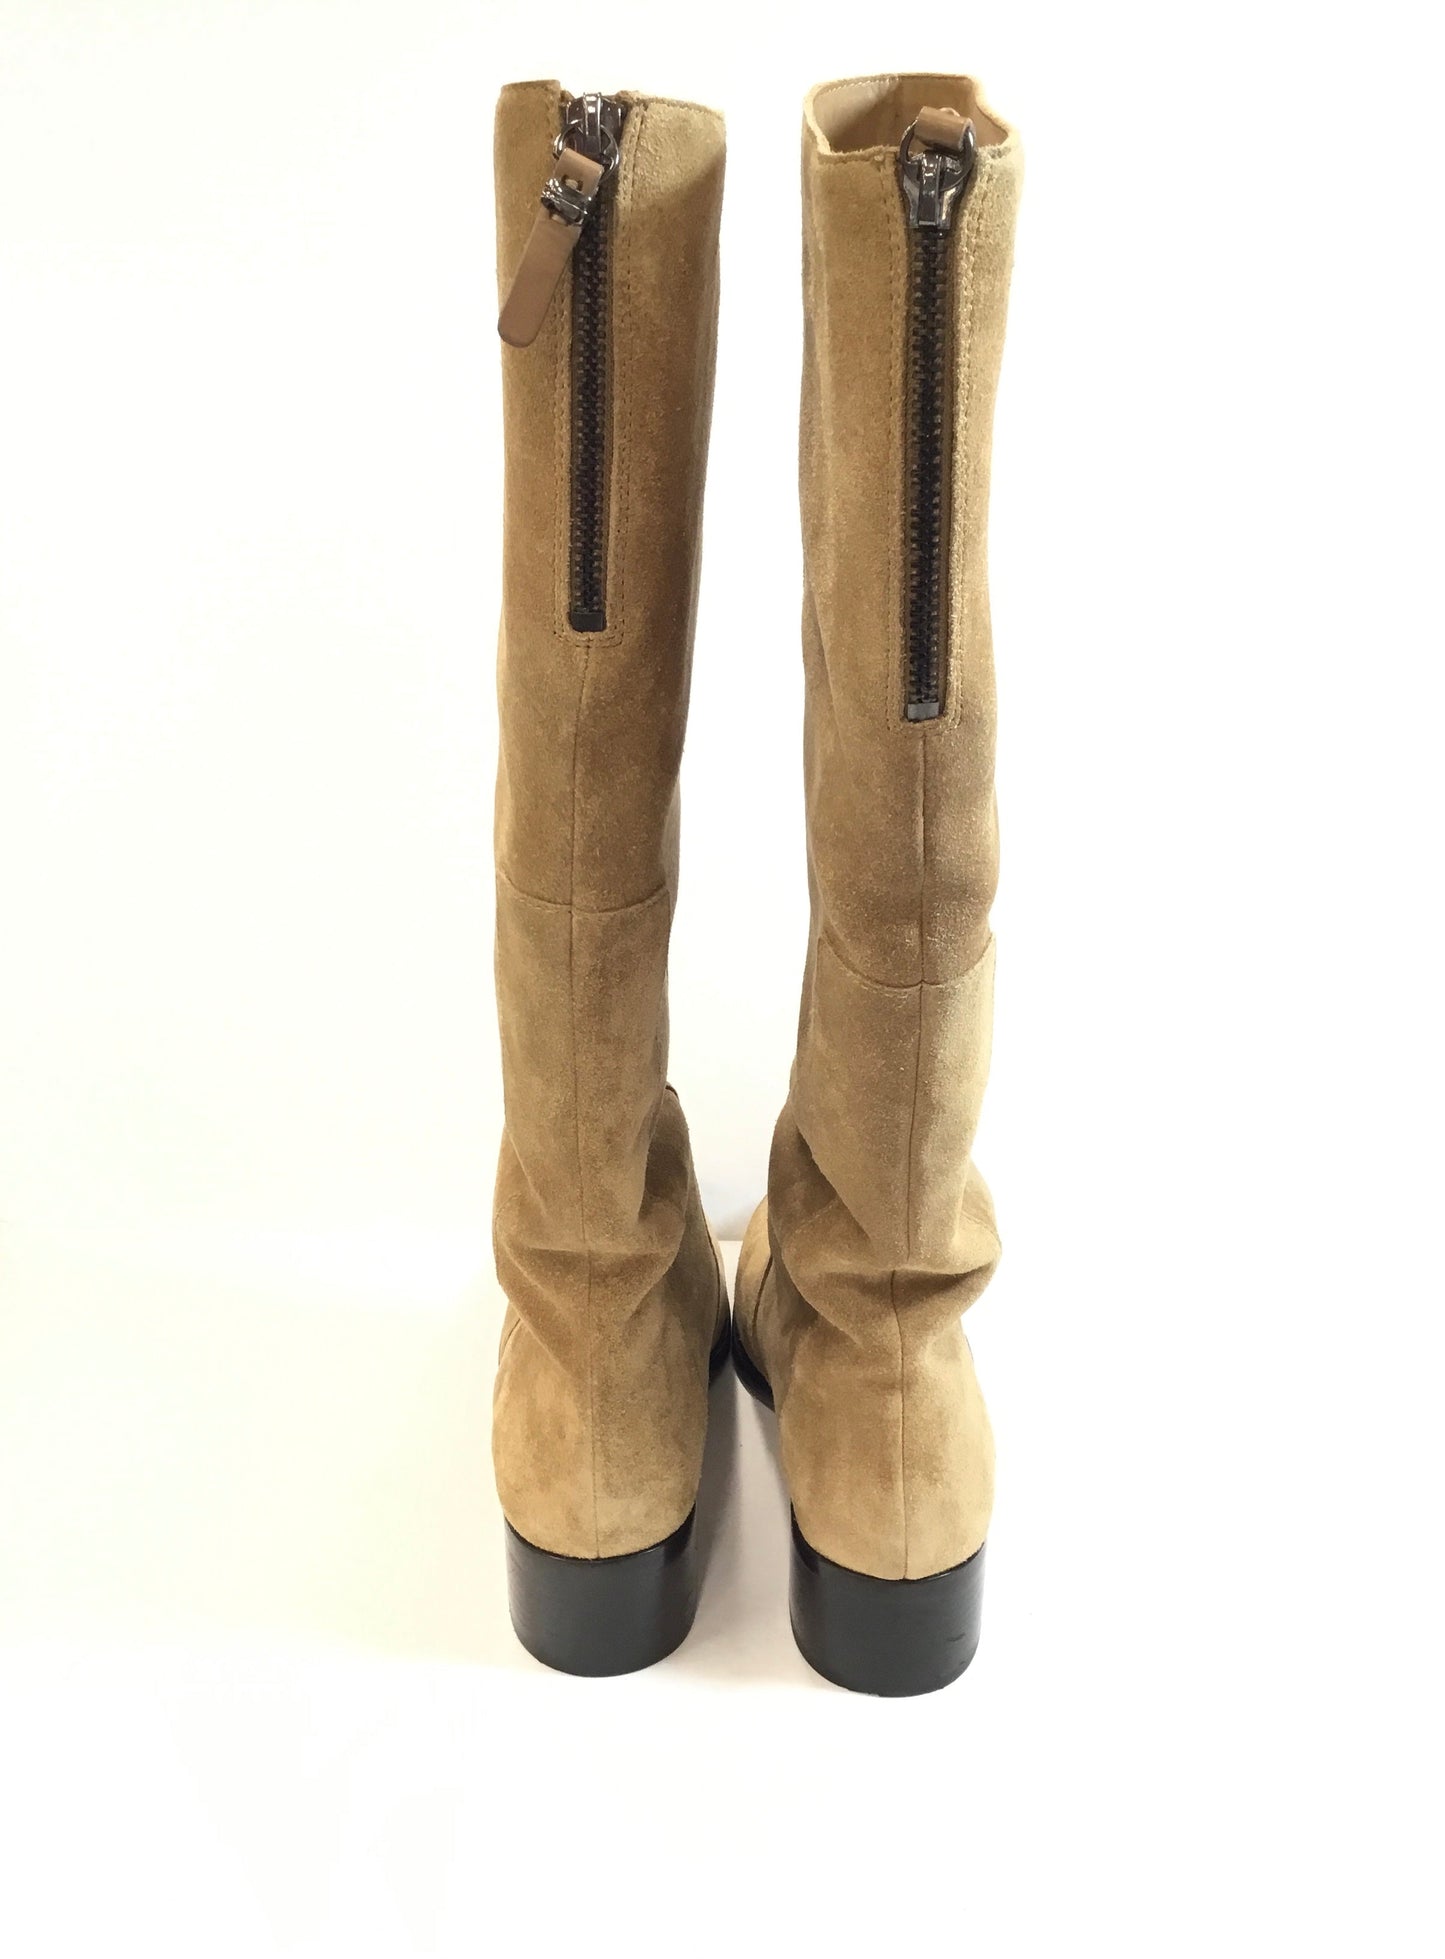 Boots Knee Heels By Via Spiga  Size: 8.5